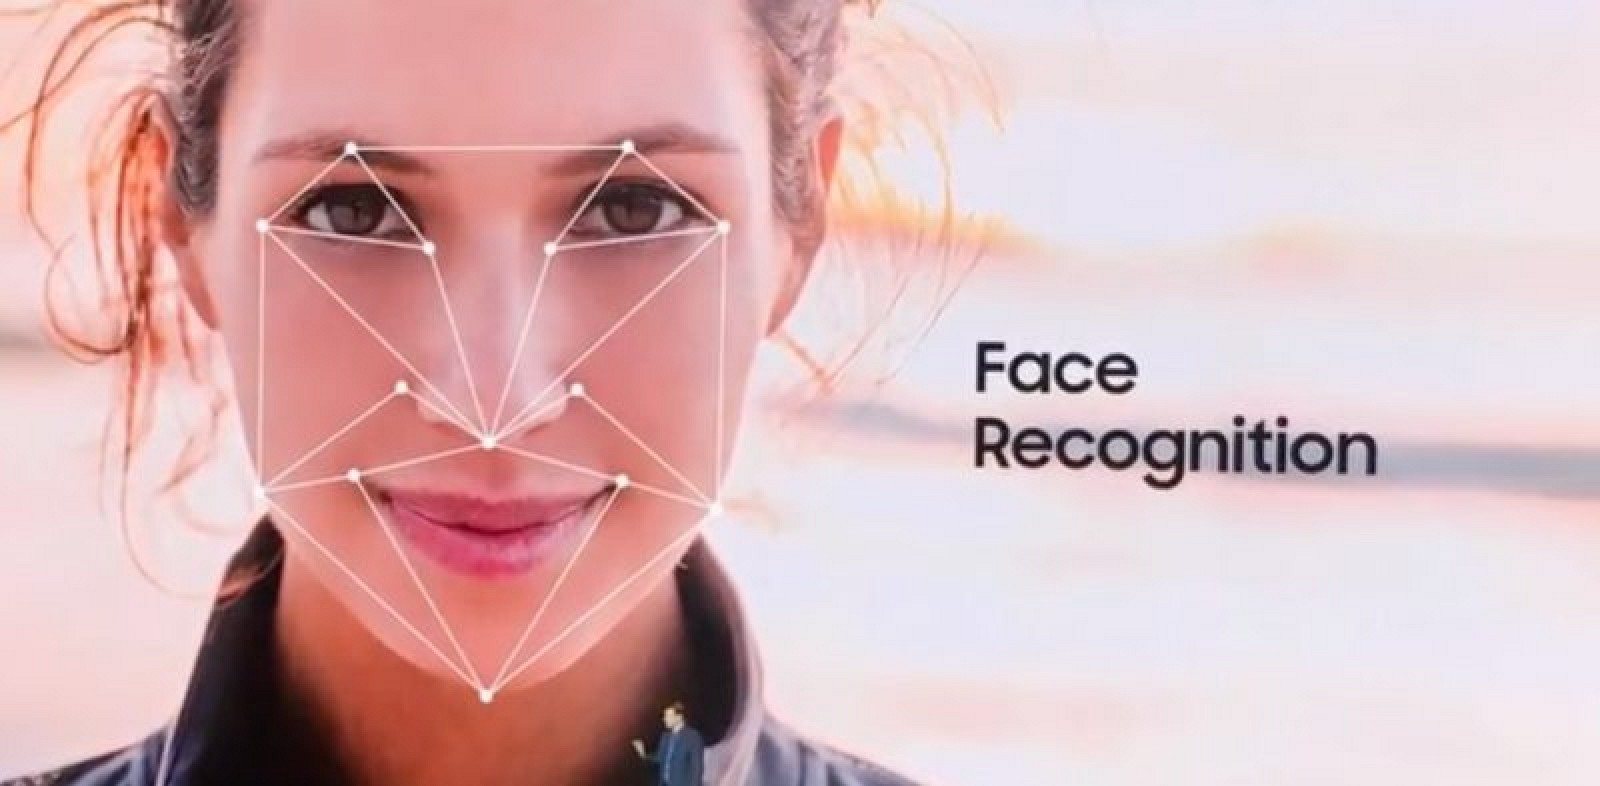 تقنية التعرف على الوجه التي يعتقد أنها ستستخدم في أيفون 8